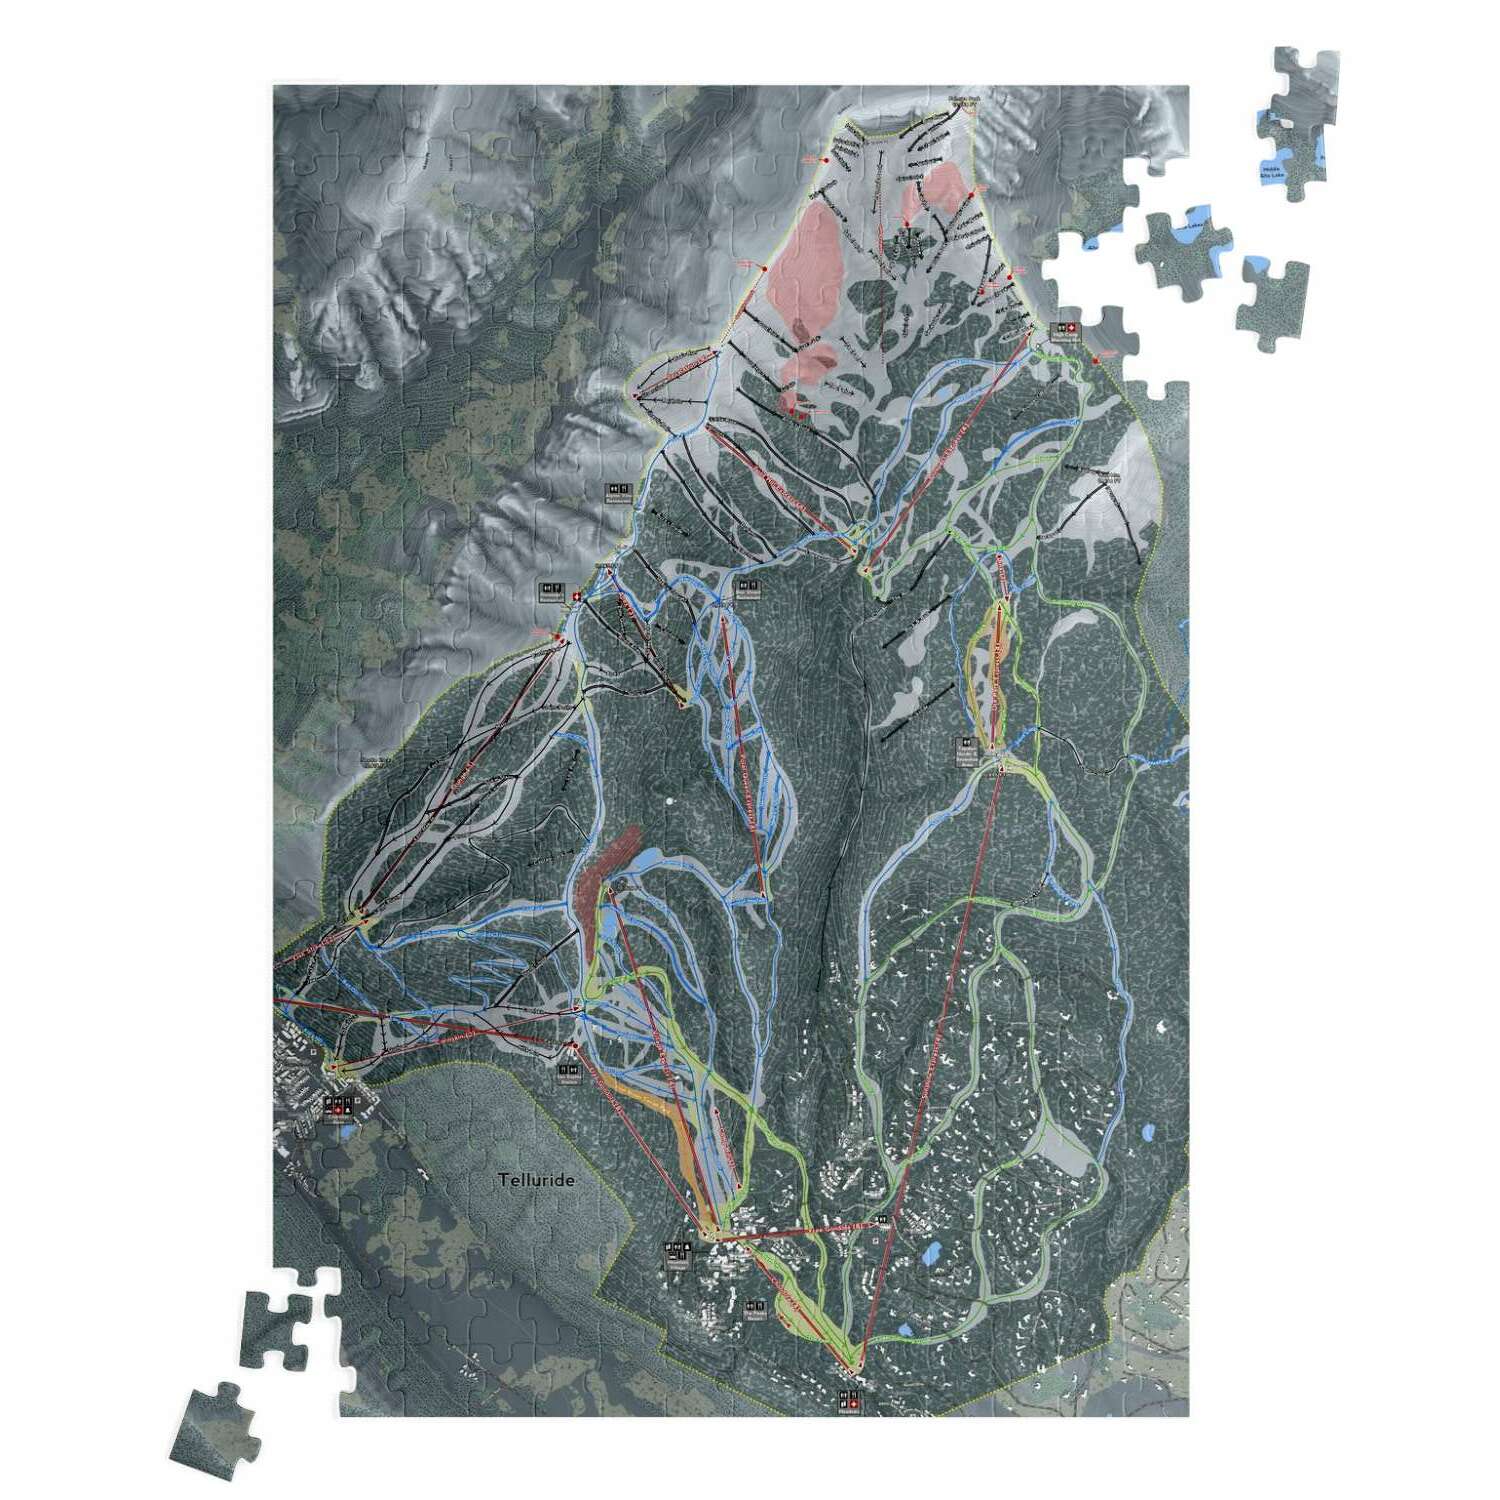 Telluride, Colorado Ski Trail Map Puzzle - Powderaddicts